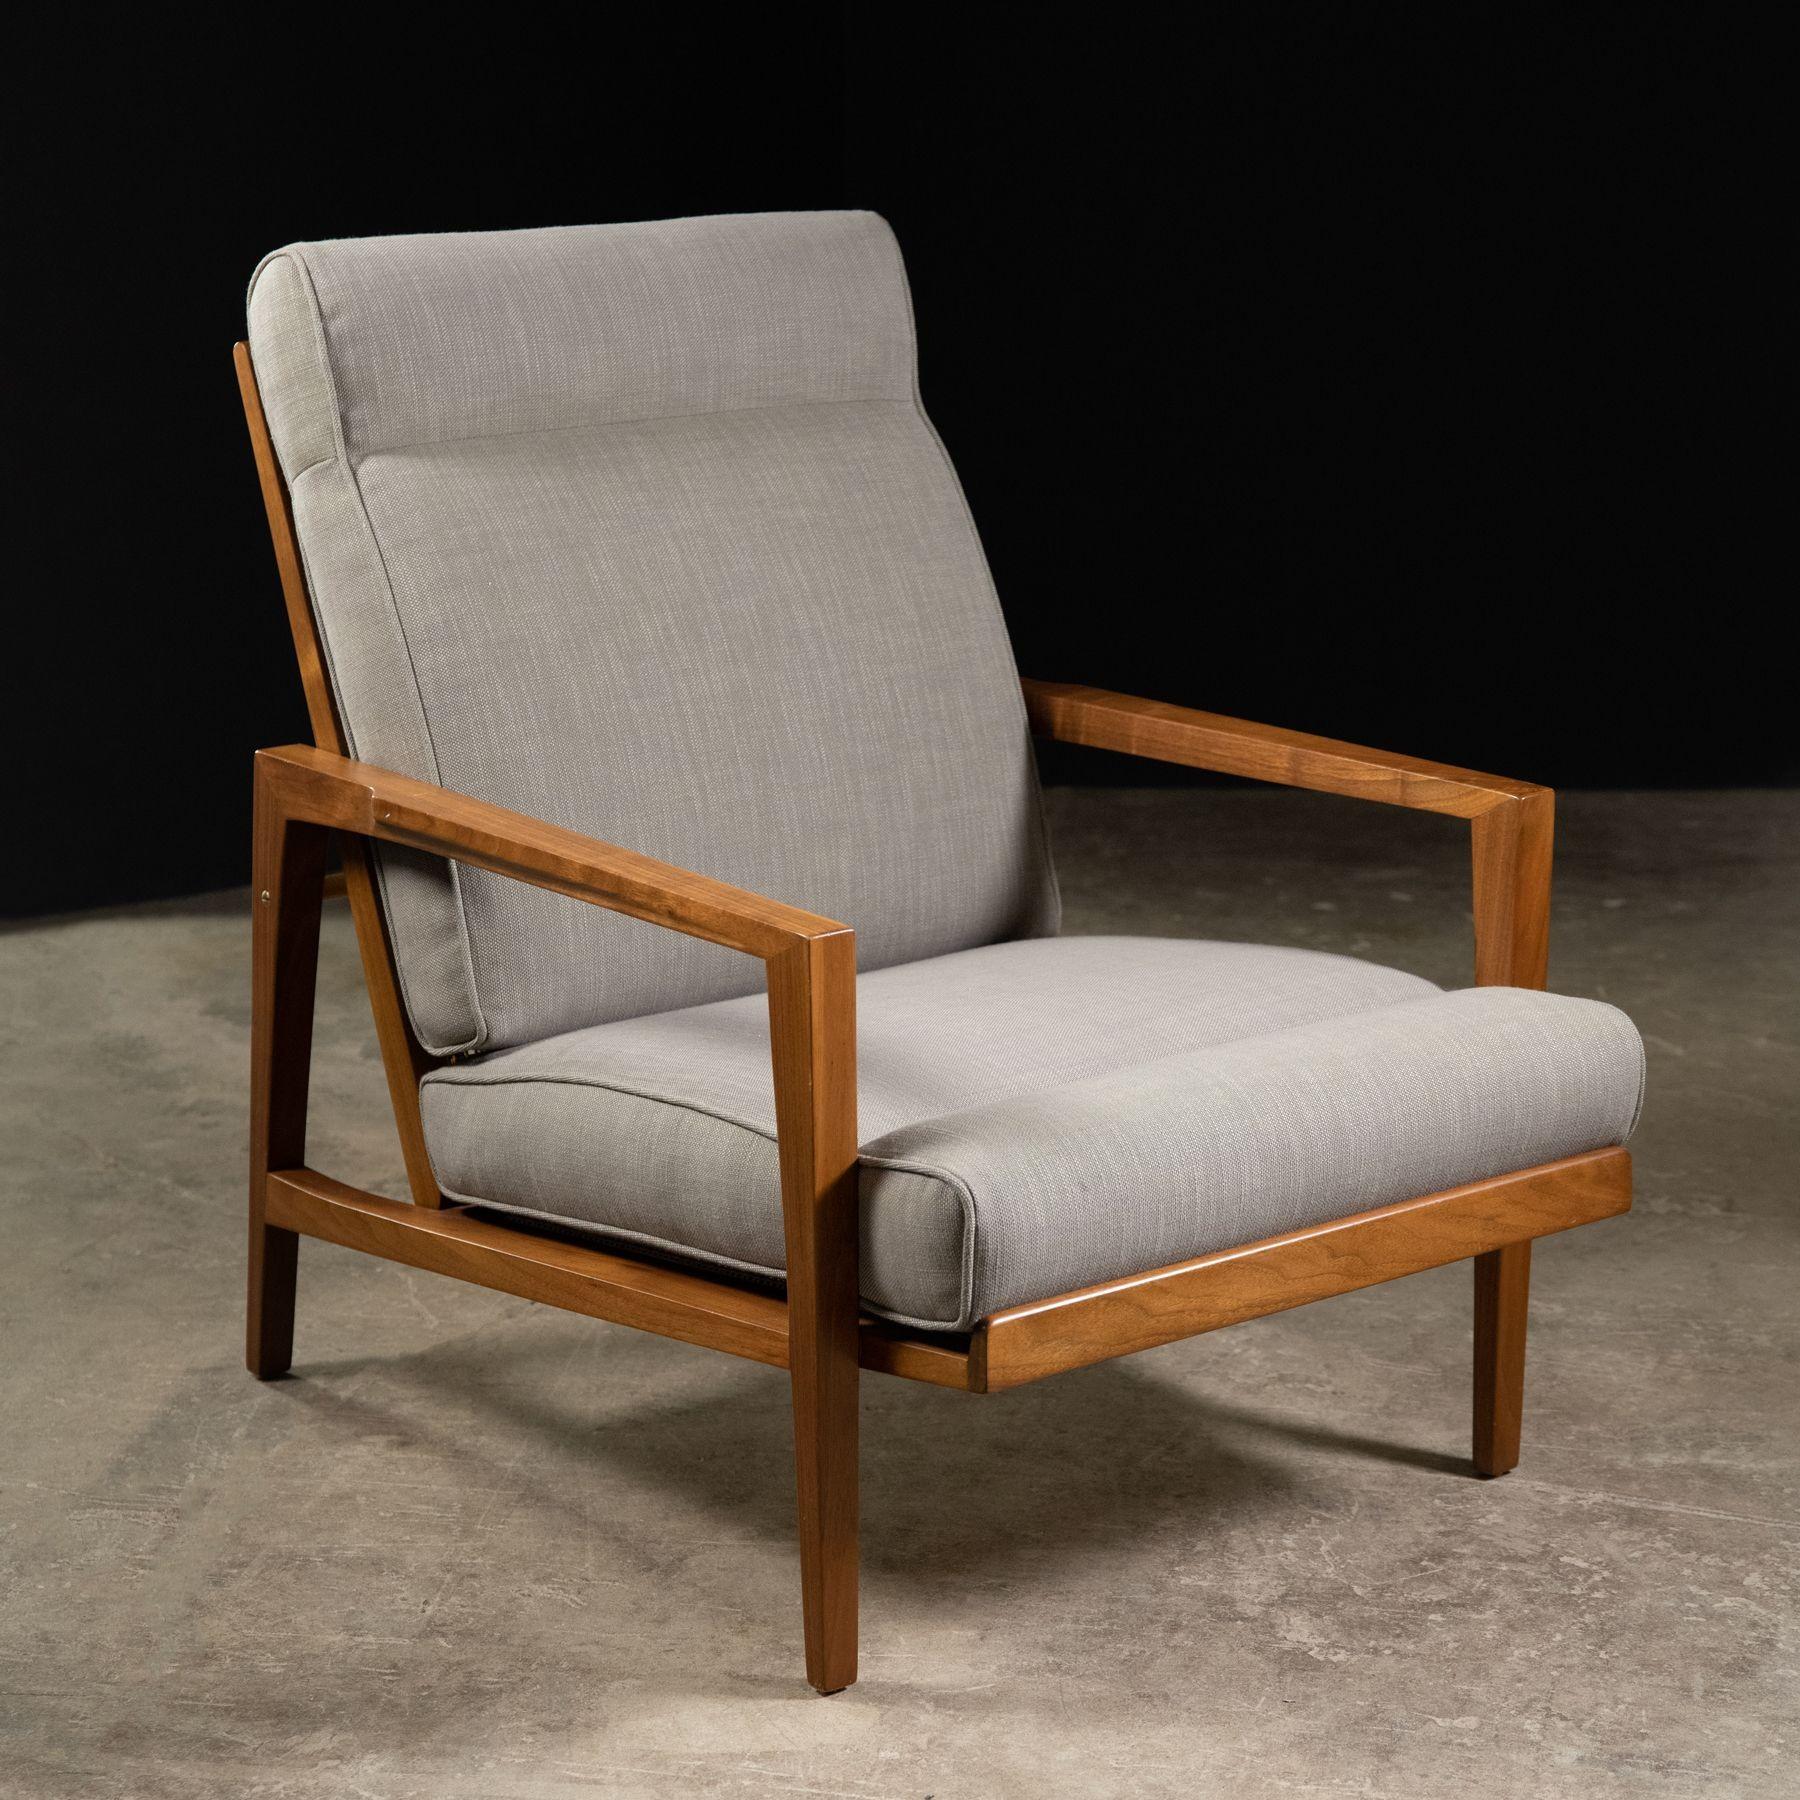 Cette élégante chaise longue a été conçue par Edward Wormley pour Dunbar à la fin des années 1960 et n'a été produite que pendant une très courte période. Le cadre est fabriqué en noyer claro américain massif avec des accoudoirs sculptés et des